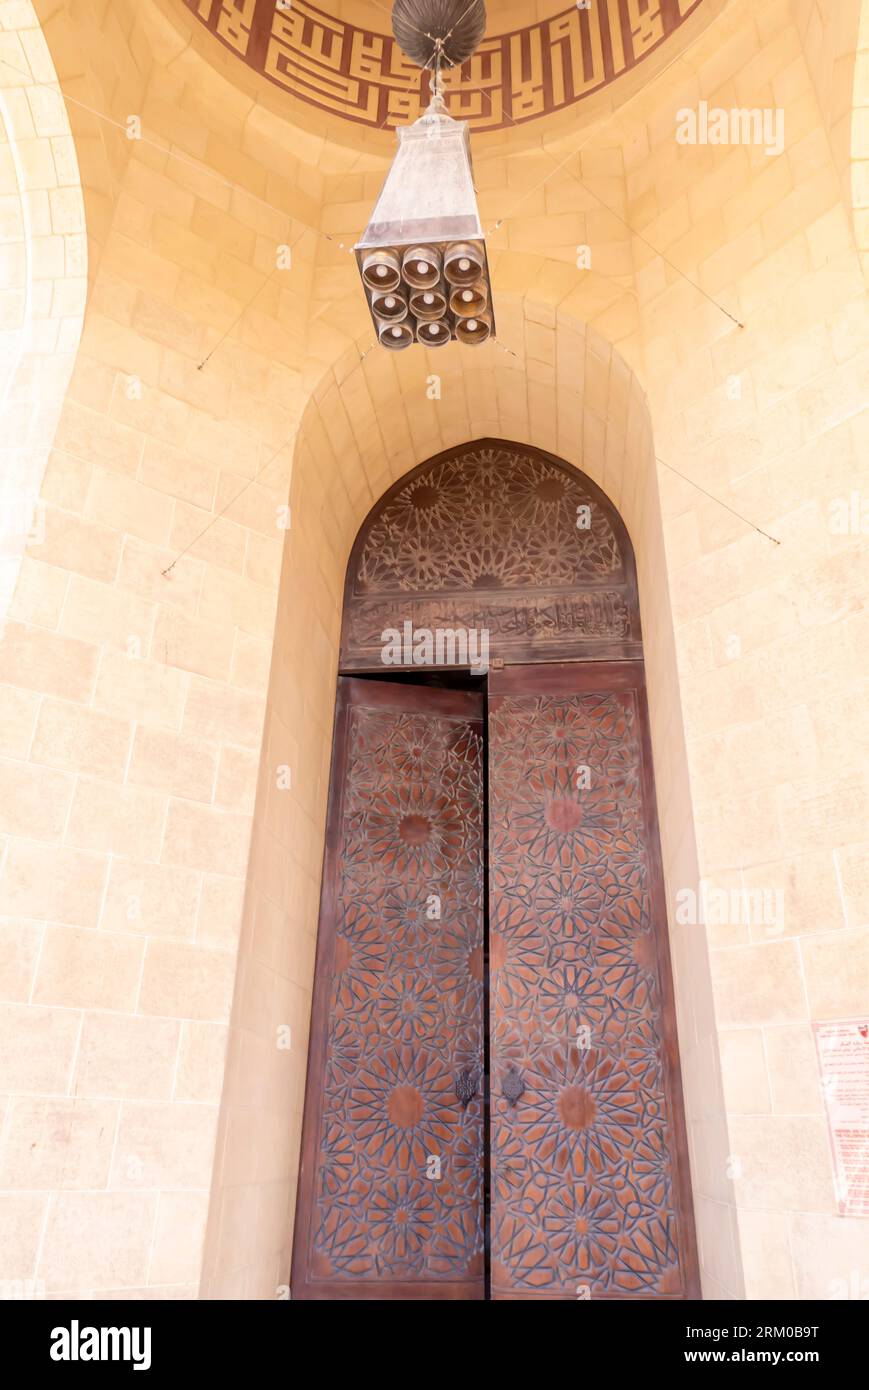 Portes dans la Grande Mosquée Al Fateh, porte dans la Grande Mosquée Al Fateh Bahreïn. Porte ouverte mosquée Bahreïn Banque D'Images